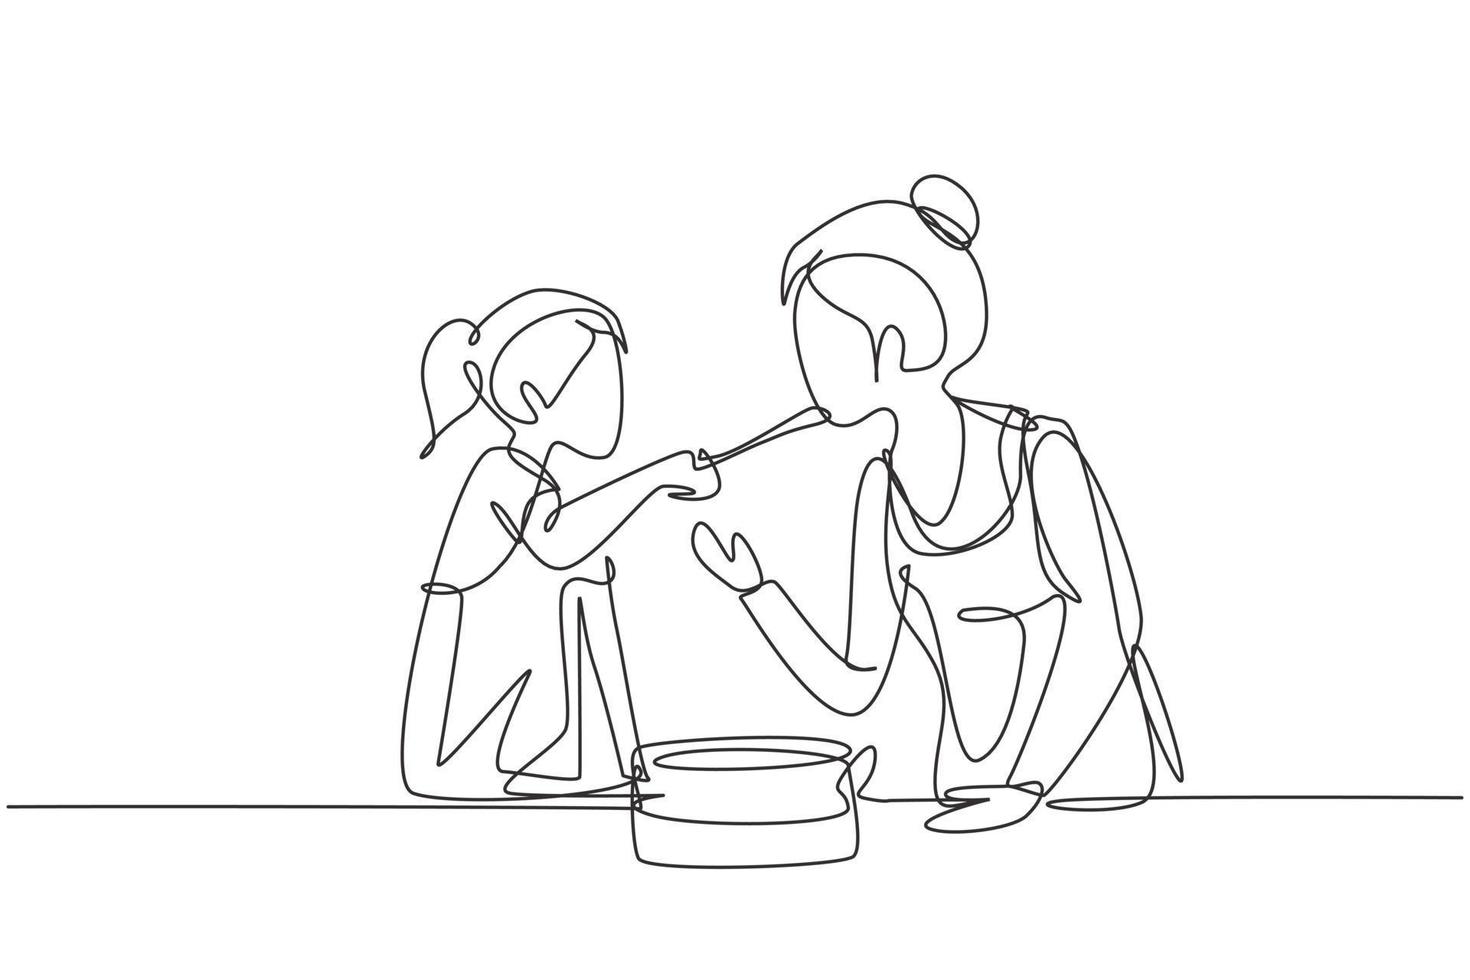 único desenho de linha mãe feliz, saboreando a comida oferecida por sua linda filha. cozinhando para o almoço juntos em uma cozinha aconchegante em casa. ilustração em vetor gráfico design moderno linha contínua